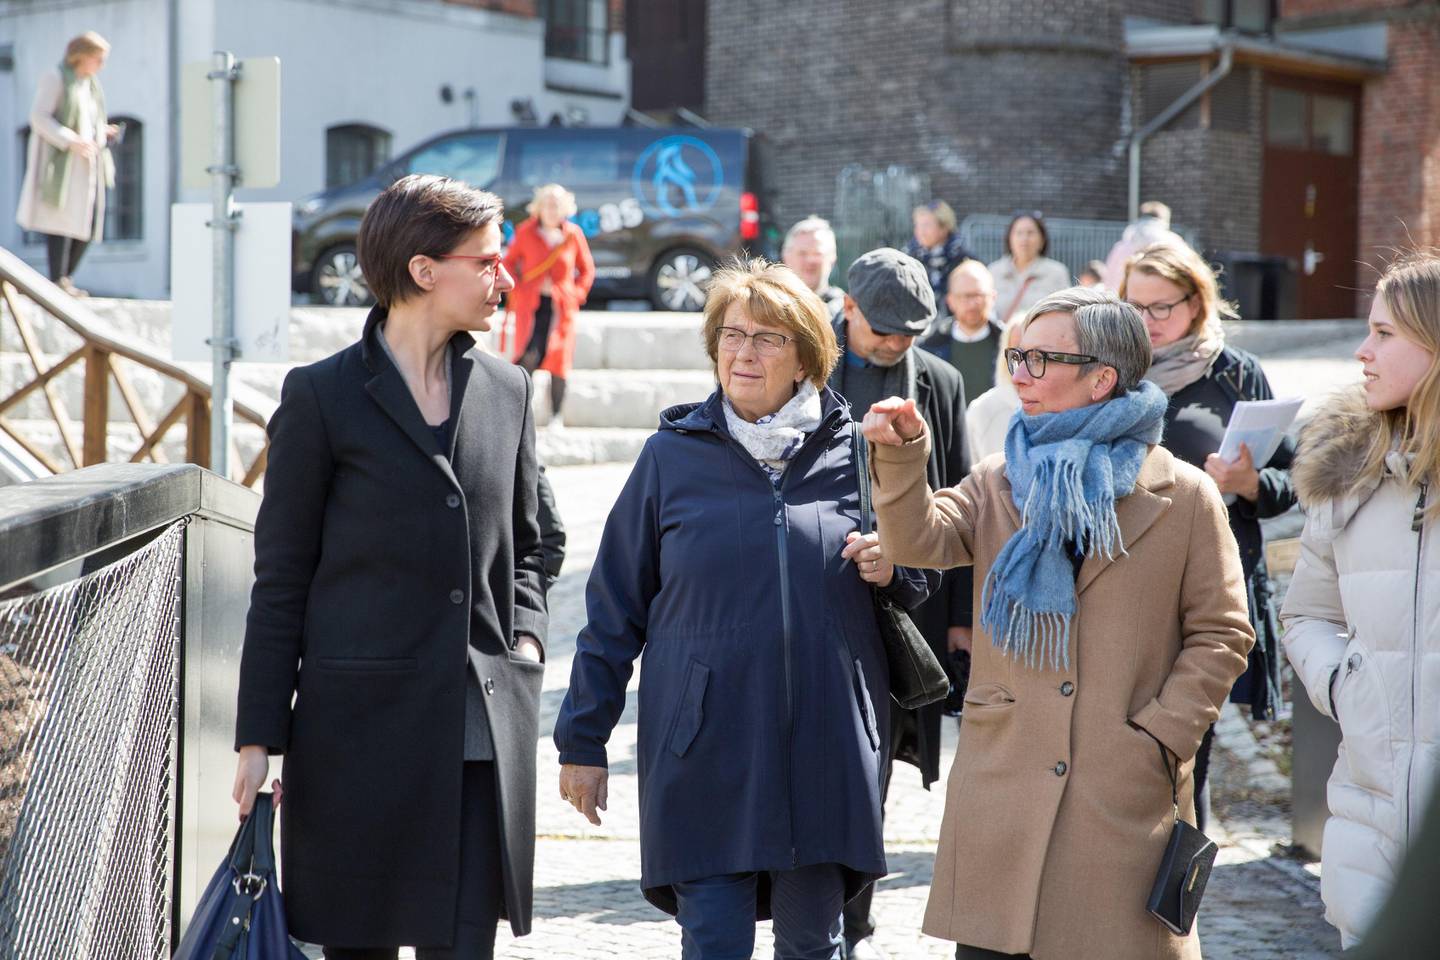 Ordfører Hanne Tollerud (til høyre) i samtale med juryleder Alexandria Algard (til venstre) og jurymedlem Edel Eikeseth under omvisningen i Moss.